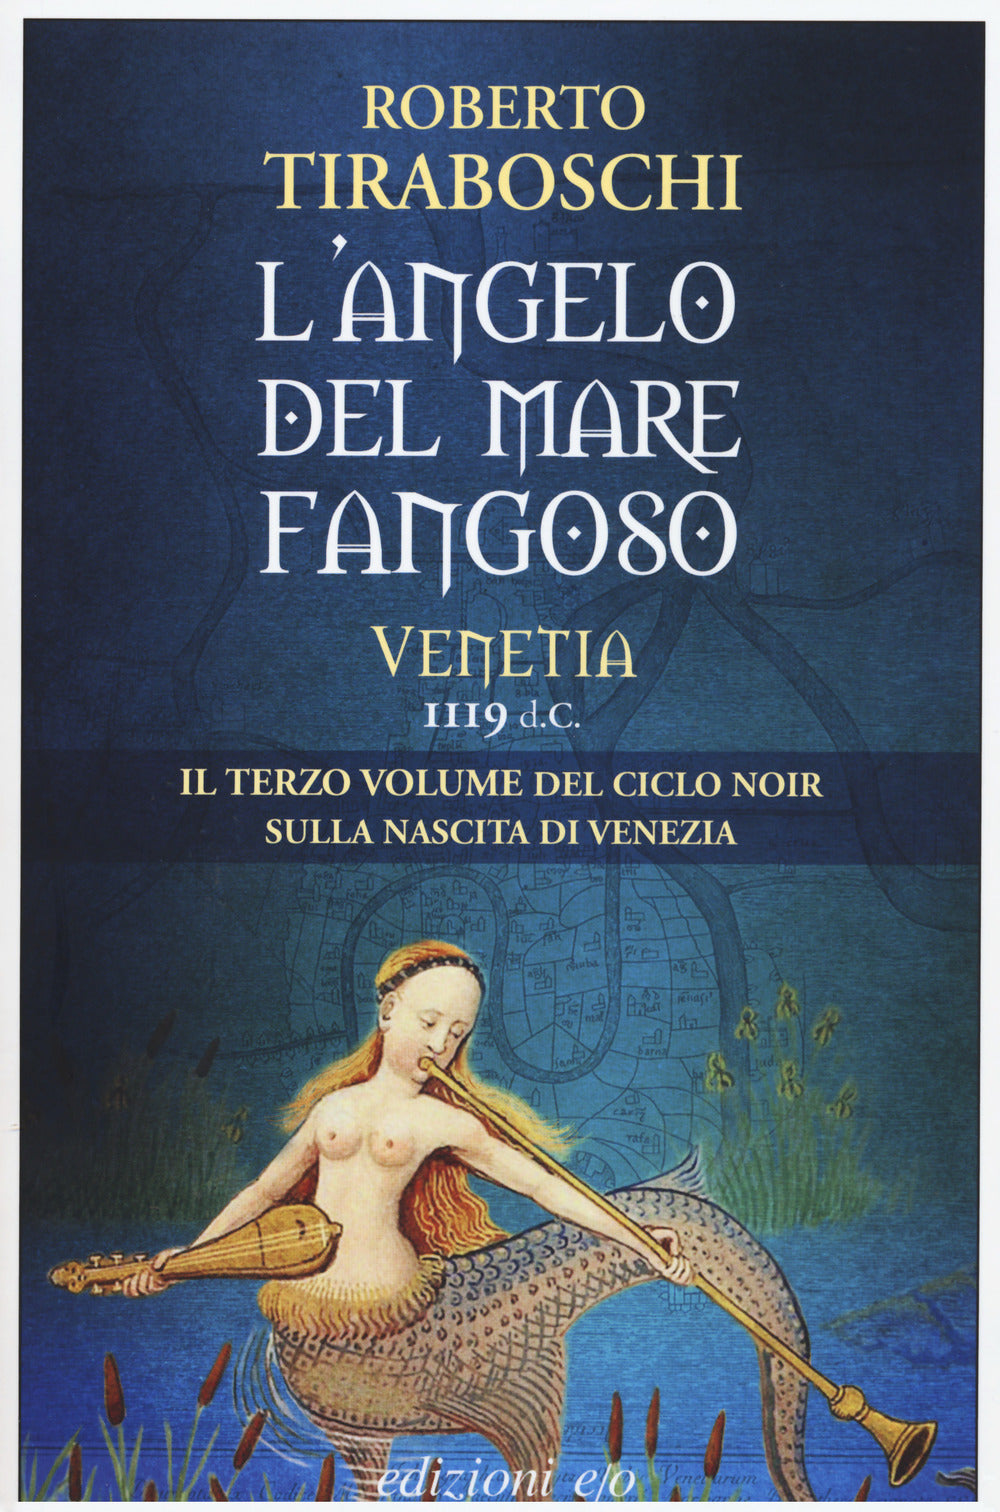 L'angelo del mare fangoso. Venetia 1119 d.C.. Vol. 3.